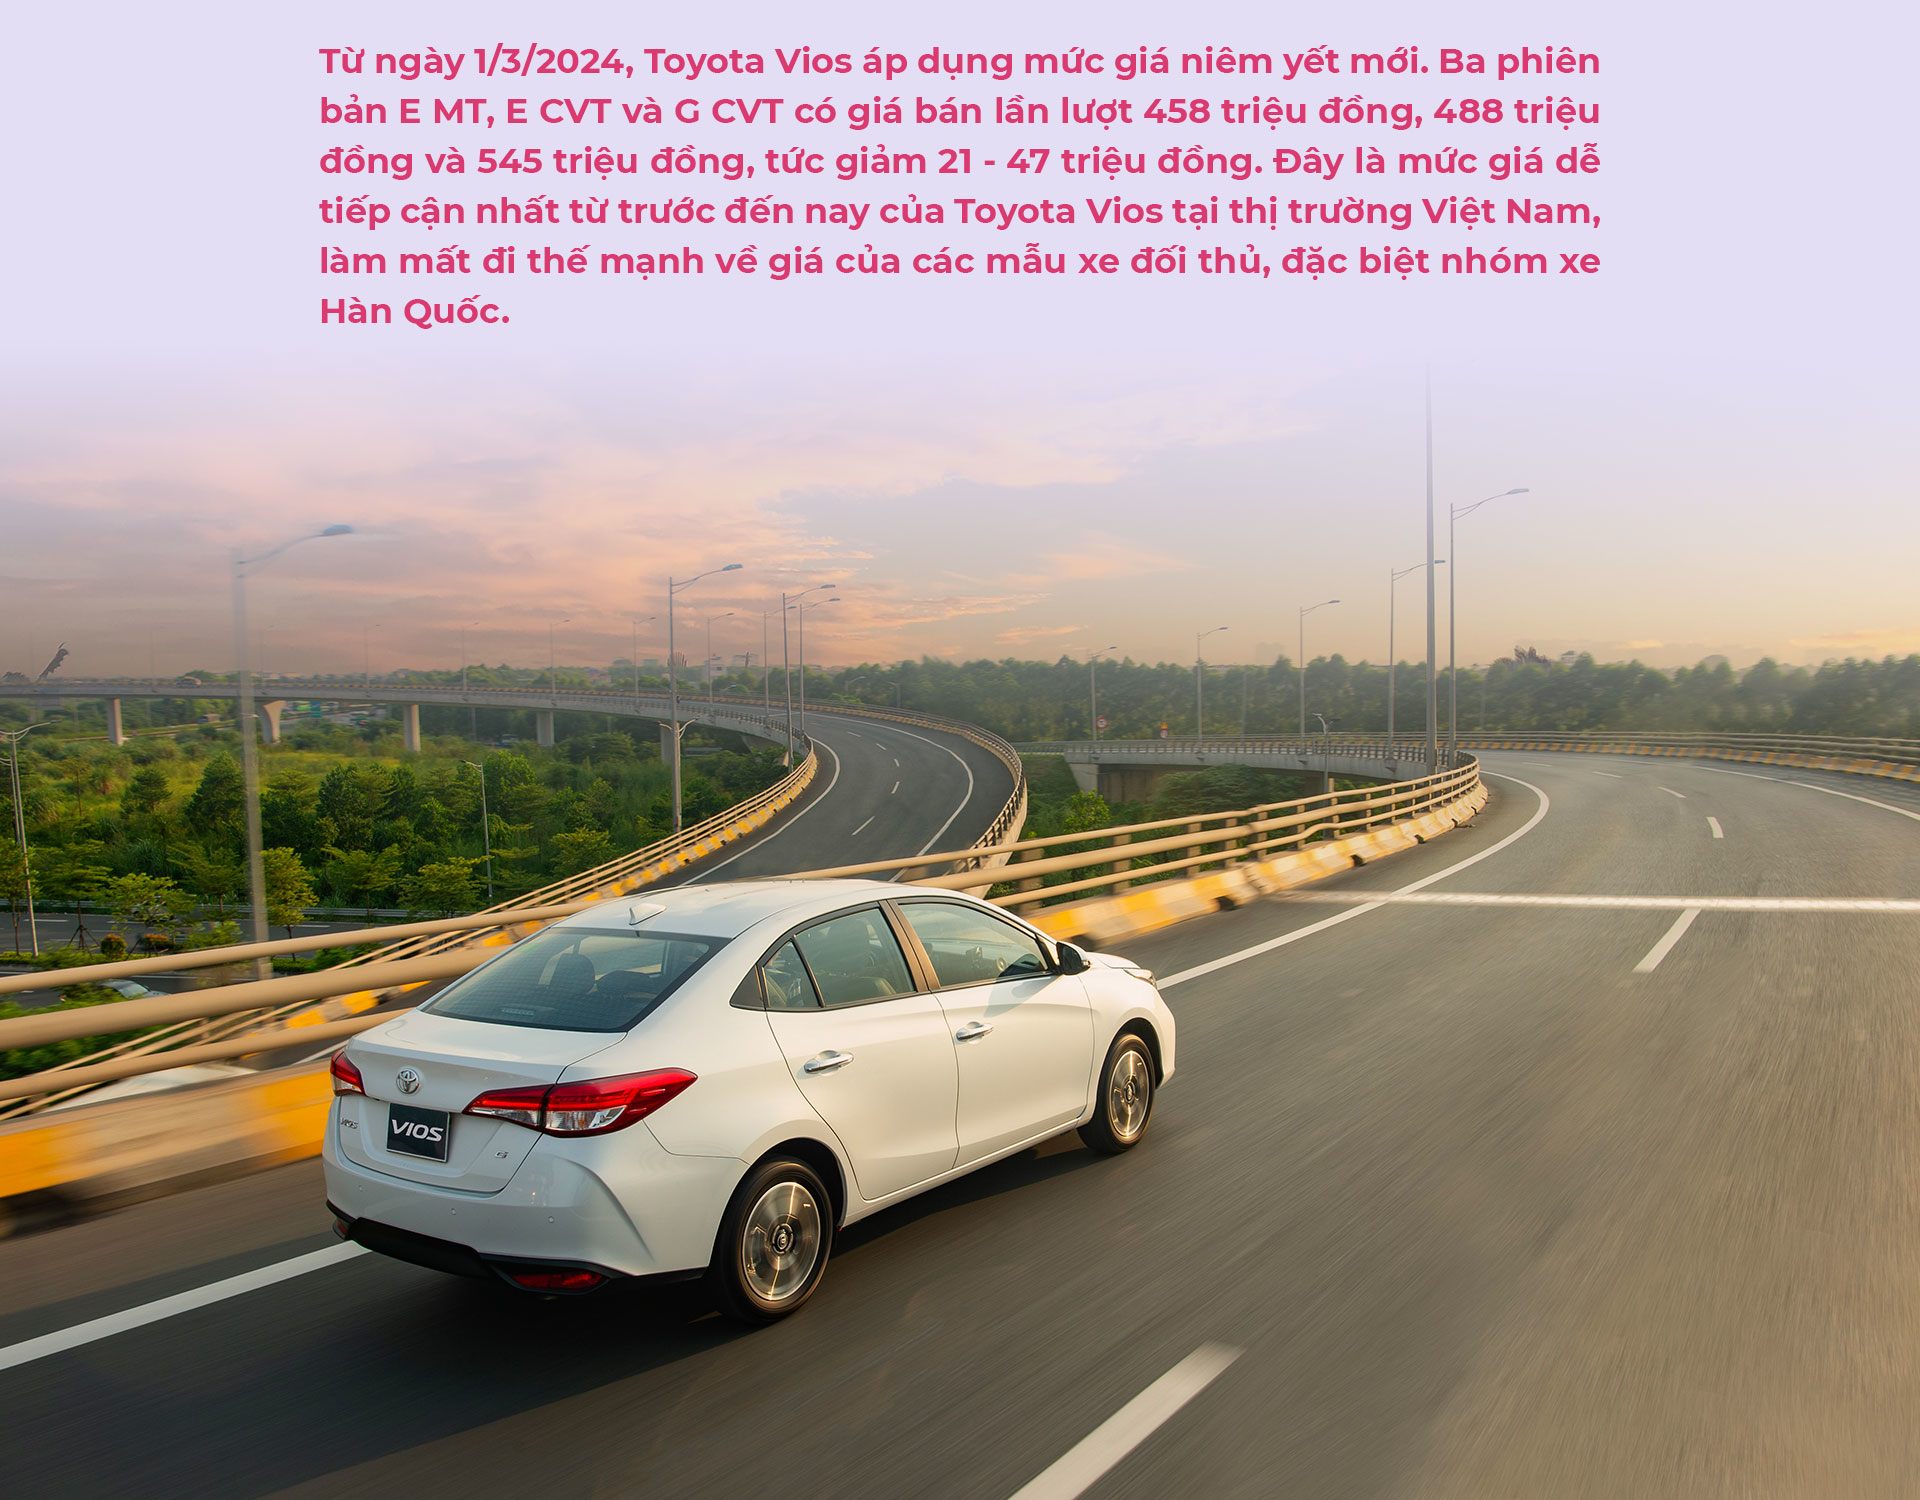 Toyota Vios - hình ảnh phản chiếu gu chọn xe của phụ nữ hiện đại - 16